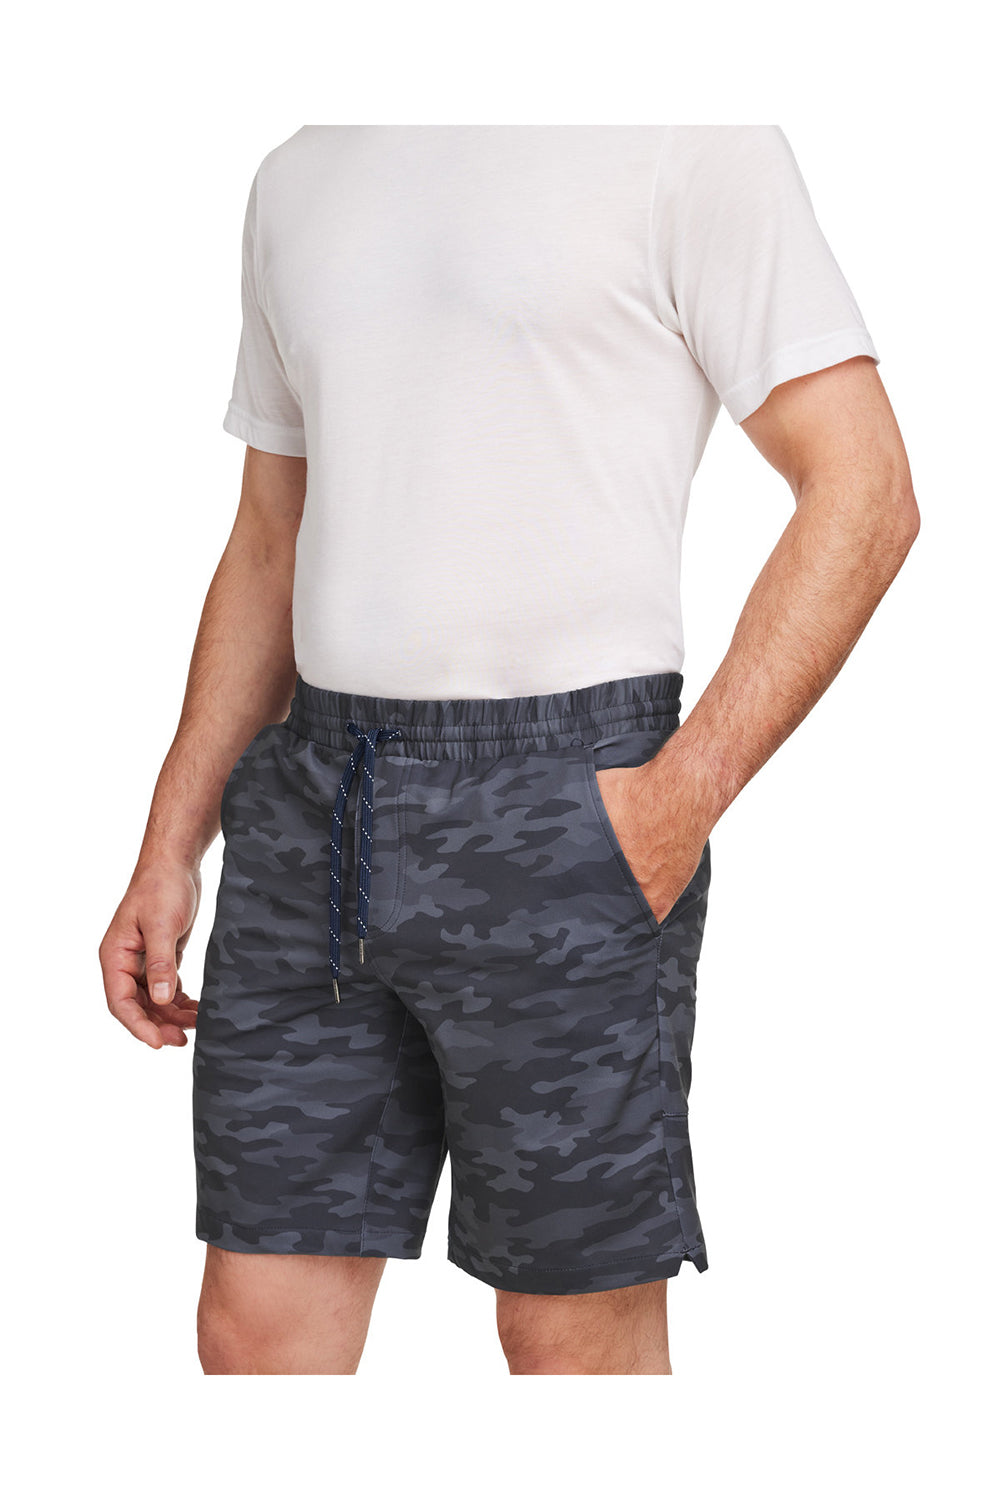 Puma 599271 Mens EGW Walker Shorts w/ Pockets Navy Blue Camo 3Q